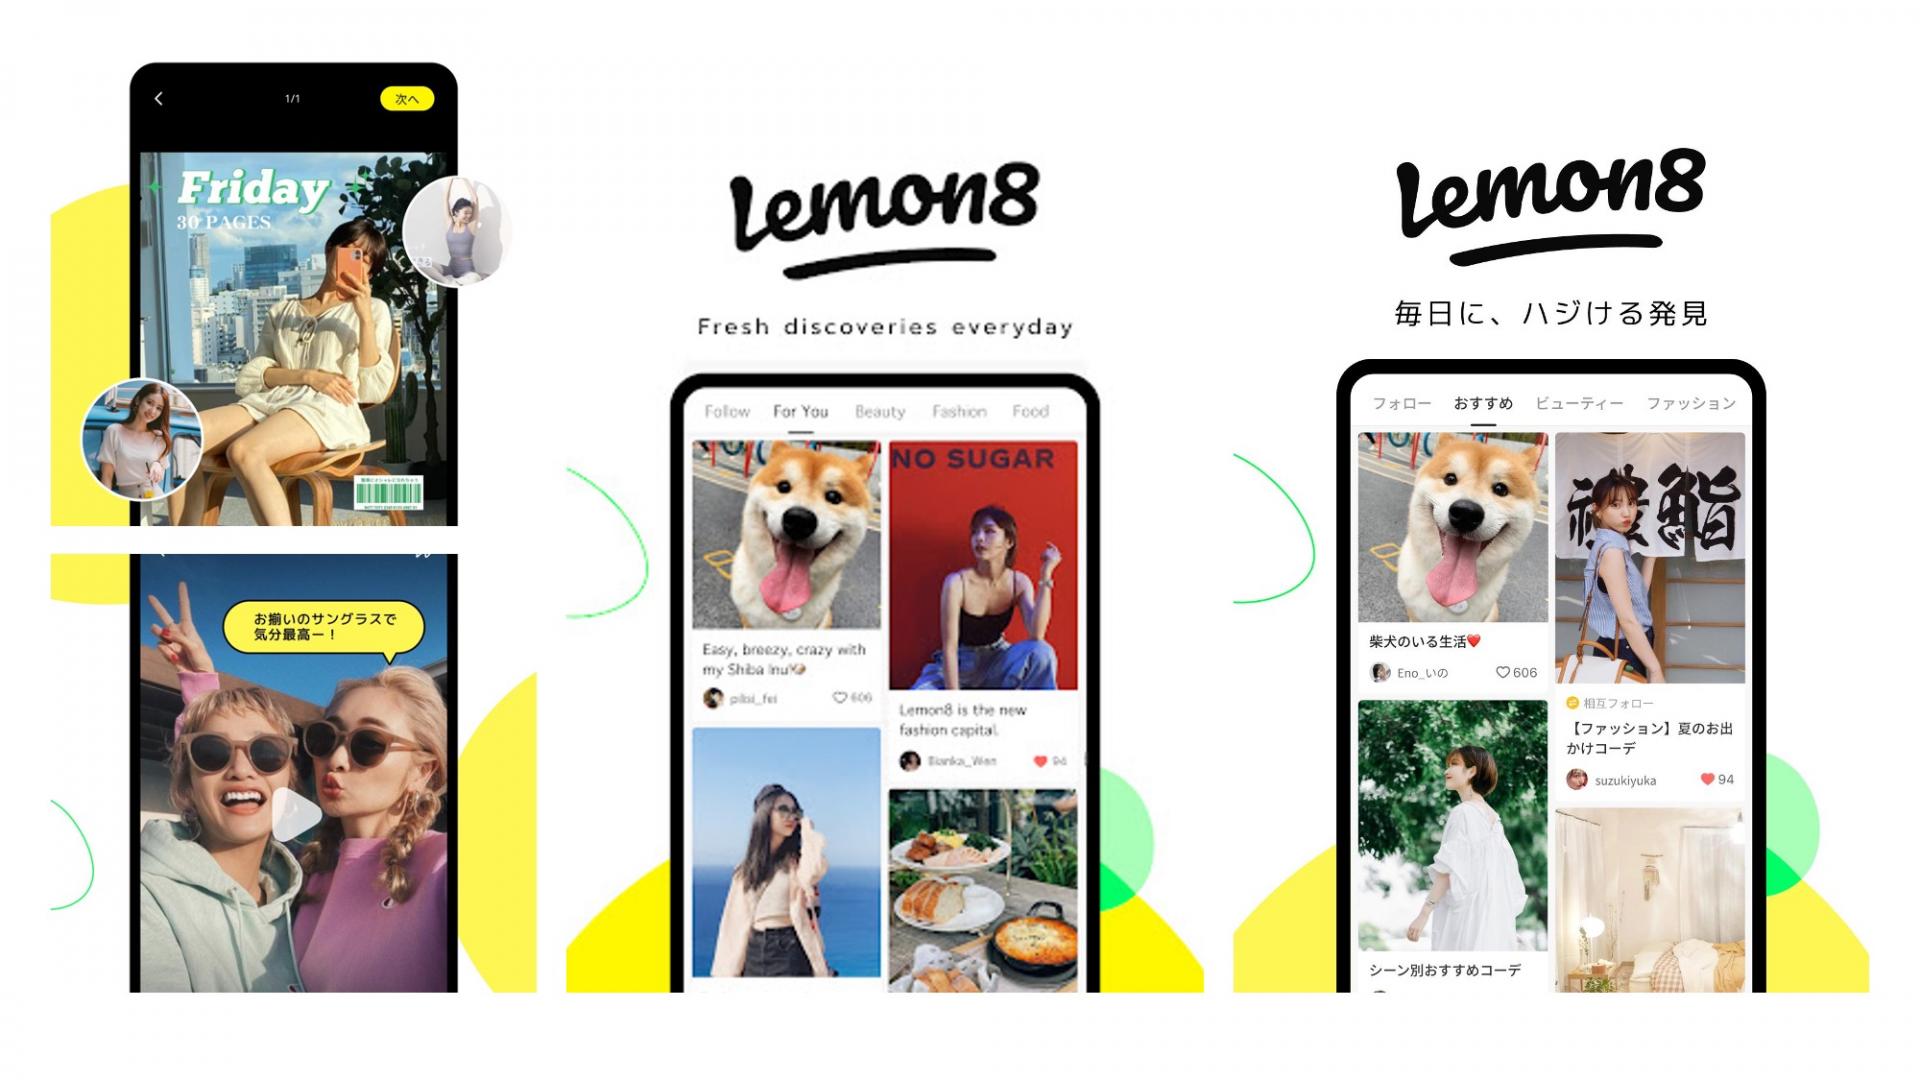 Điểm nổi bật của ứng dụng Lemon8